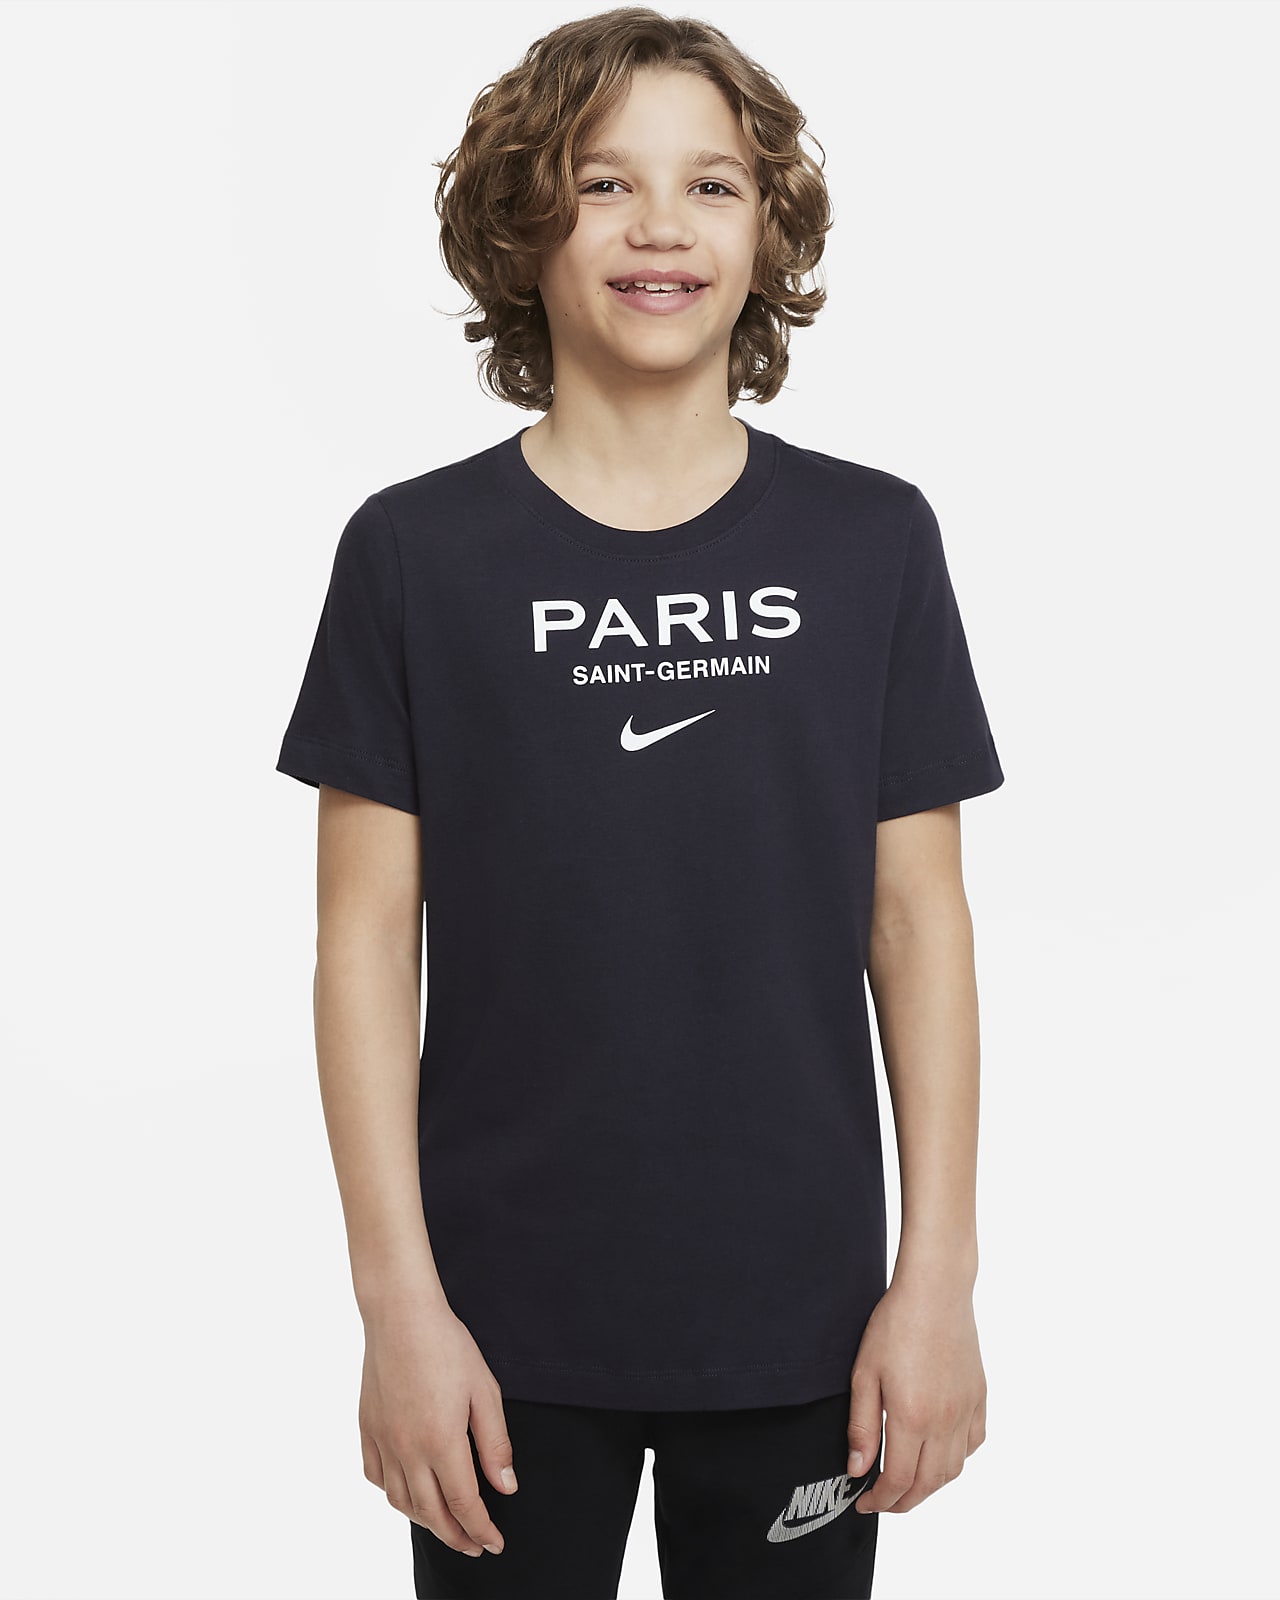 diamant Oost Timor Fluisteren Paris Saint-Germain Swoosh Big Kids' Soccer T-Shirt. Nike.com